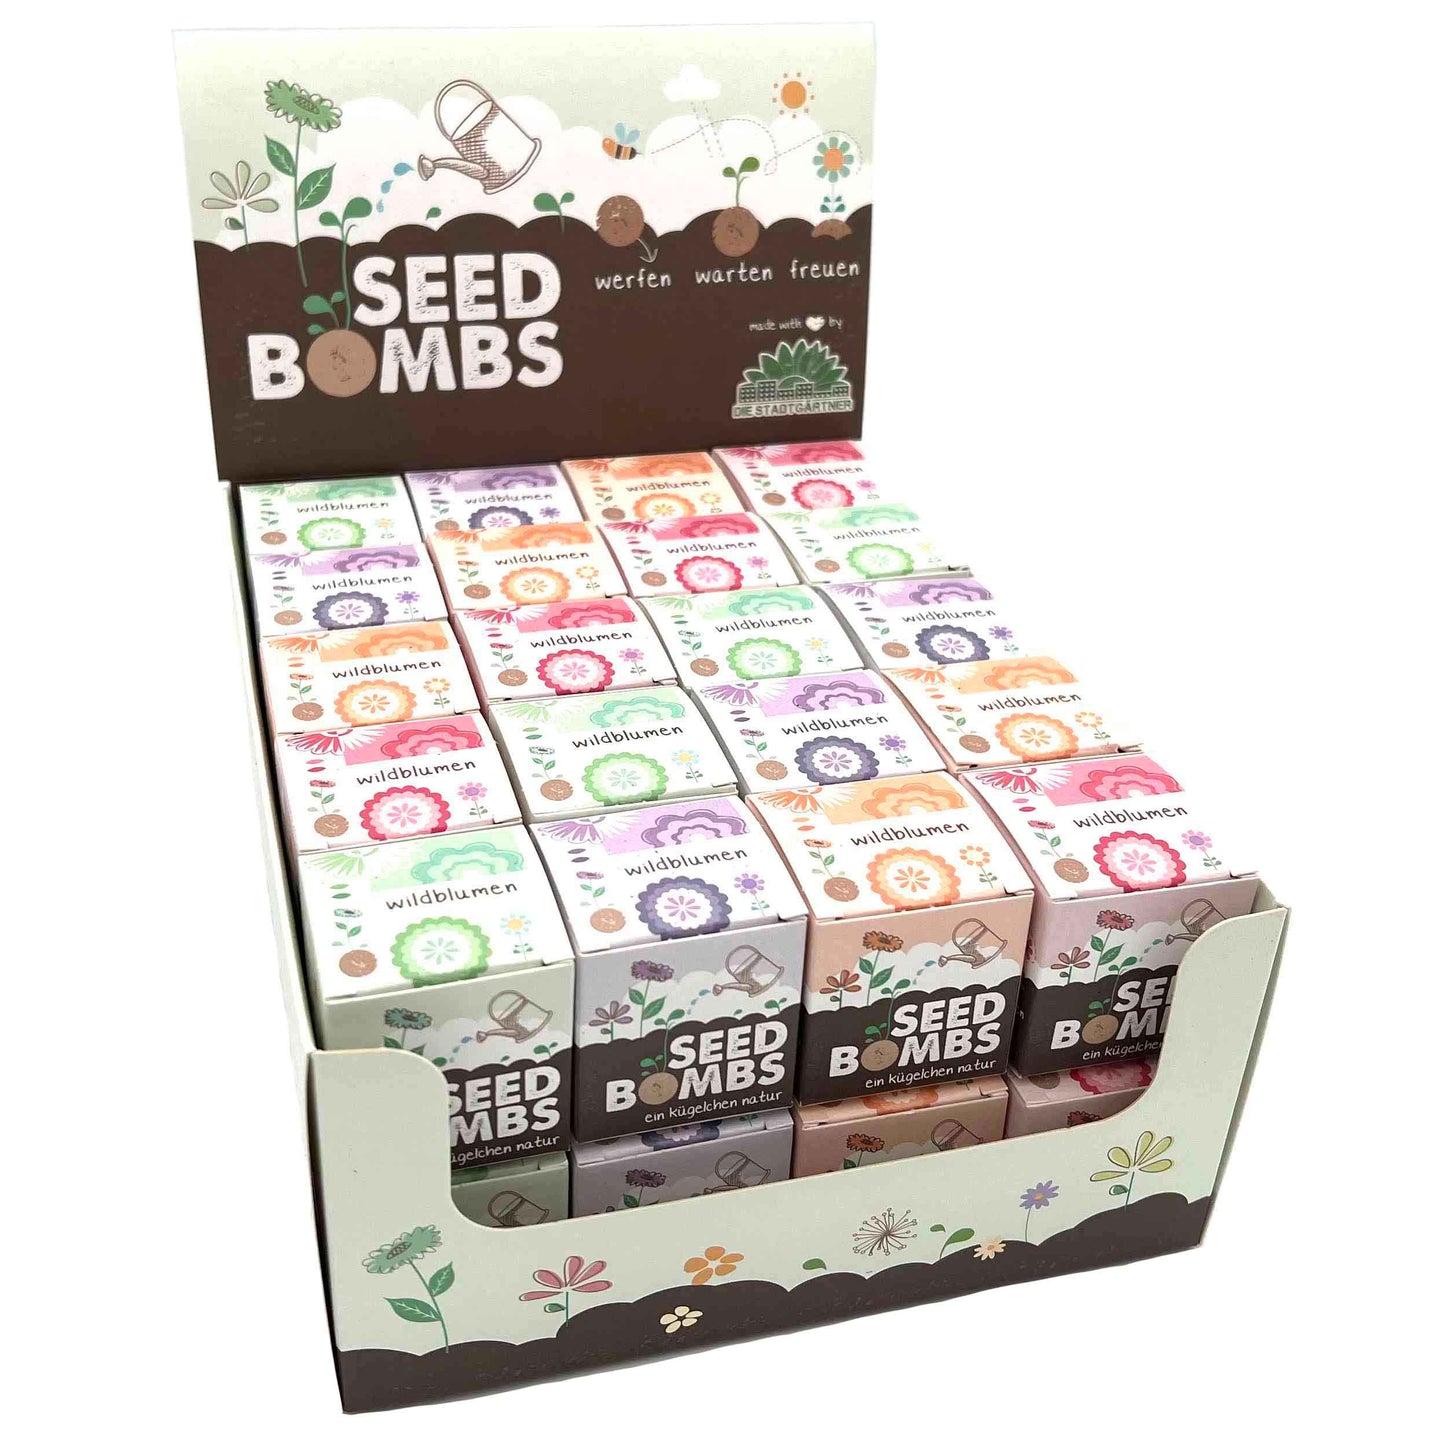 DIE STADTGÄRTNER handgemachte Saatbomben | Seedbombs | nachhaltiges Geschenk | 100% natürliche Rohstoffe | Wildblumen im Würfel |1 Stück